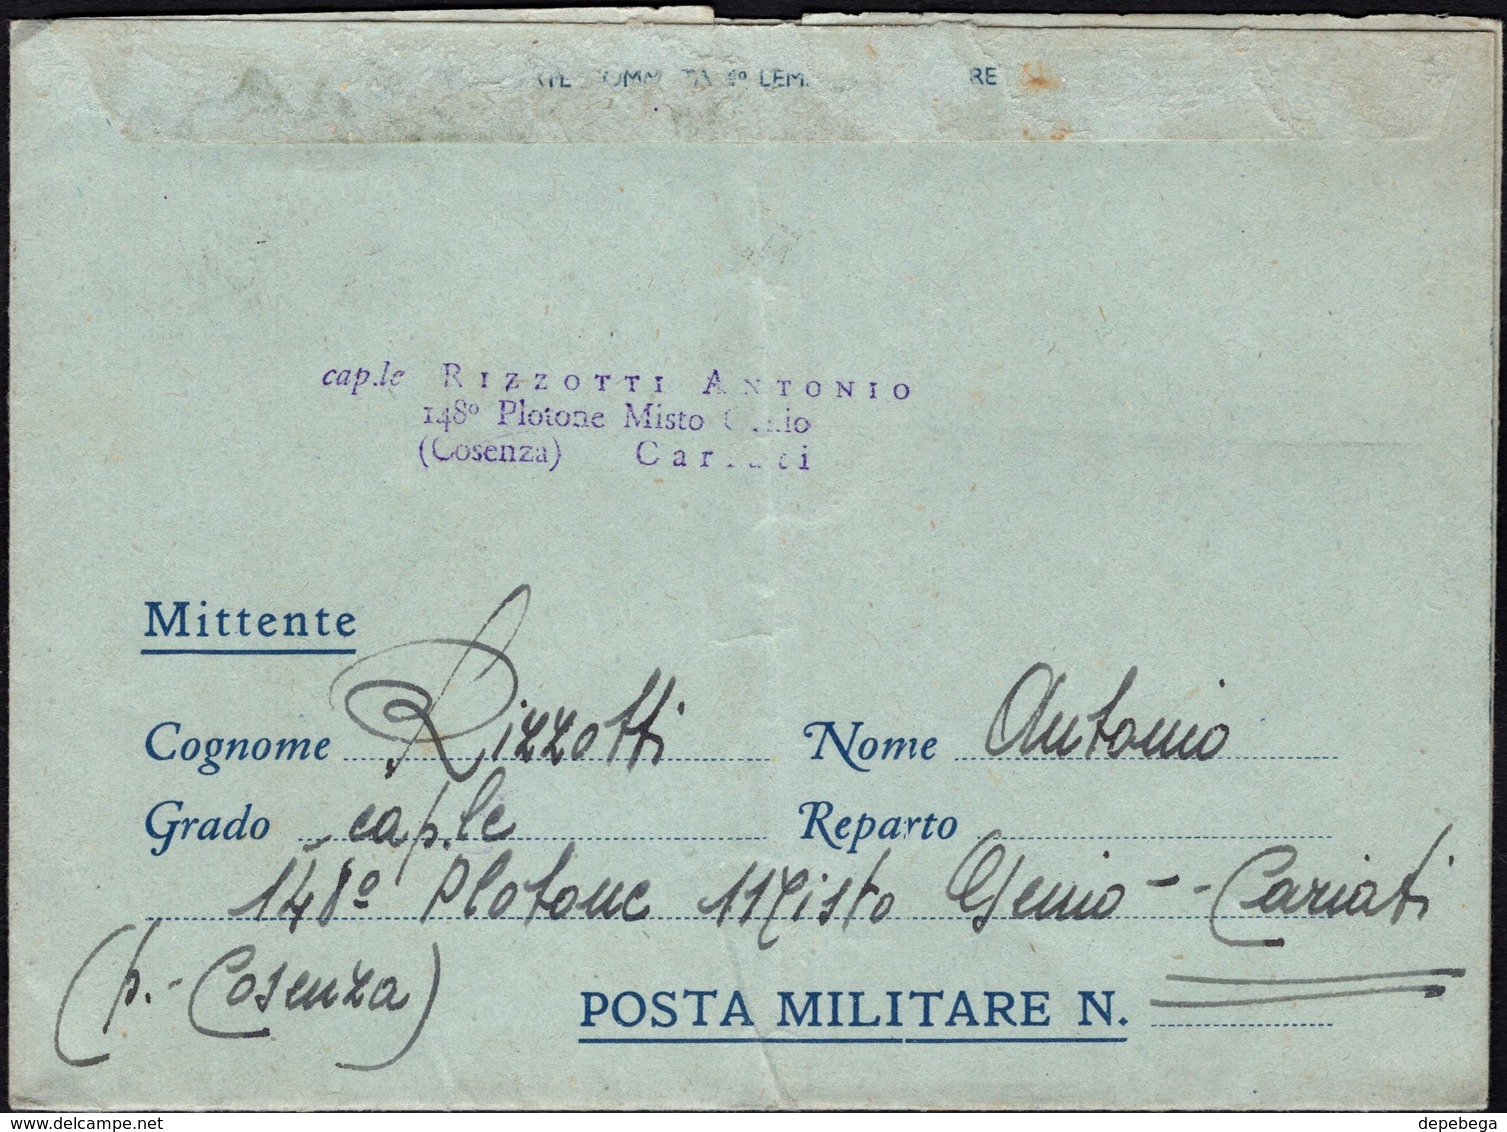 Italy - Biglietto Postale Per Le Forze Armate. Campagnia Misto Genio, 148 Plotone, CARIATI 26.6.1943 - Albinia. - Franchise